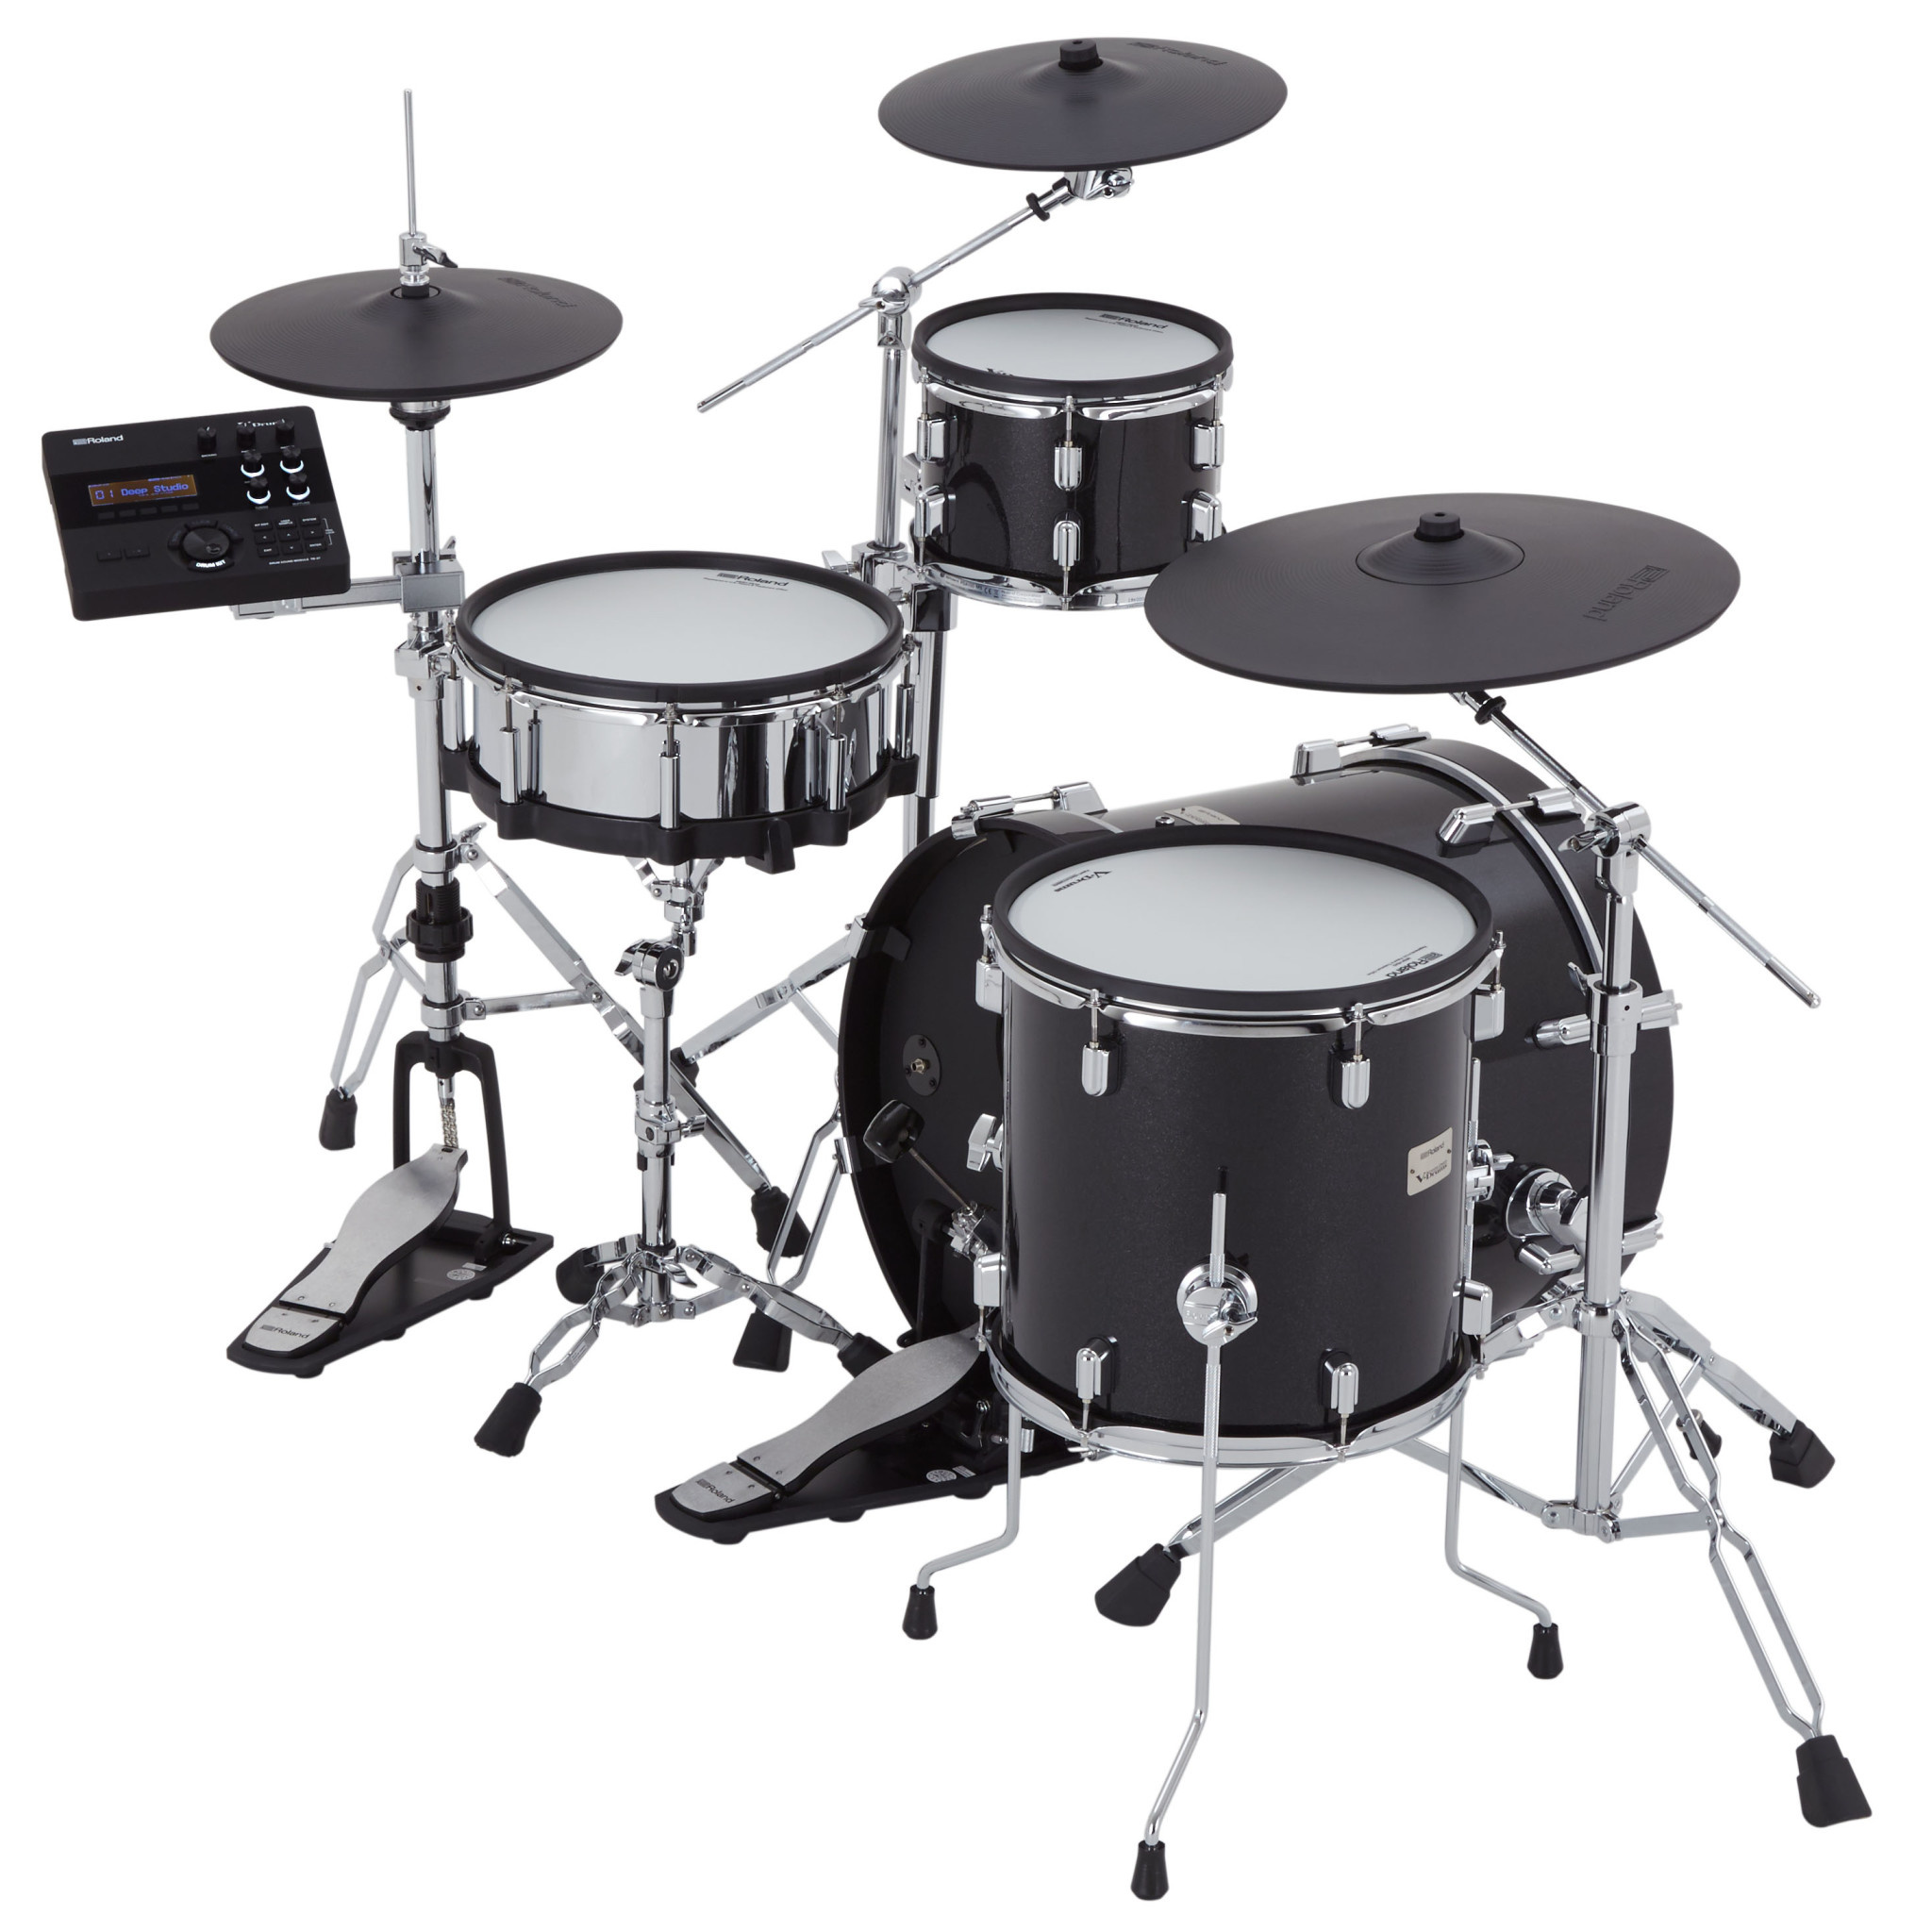 Roland VAD504 V-drums acoustic design elektronisch drumstel Busscherdrums